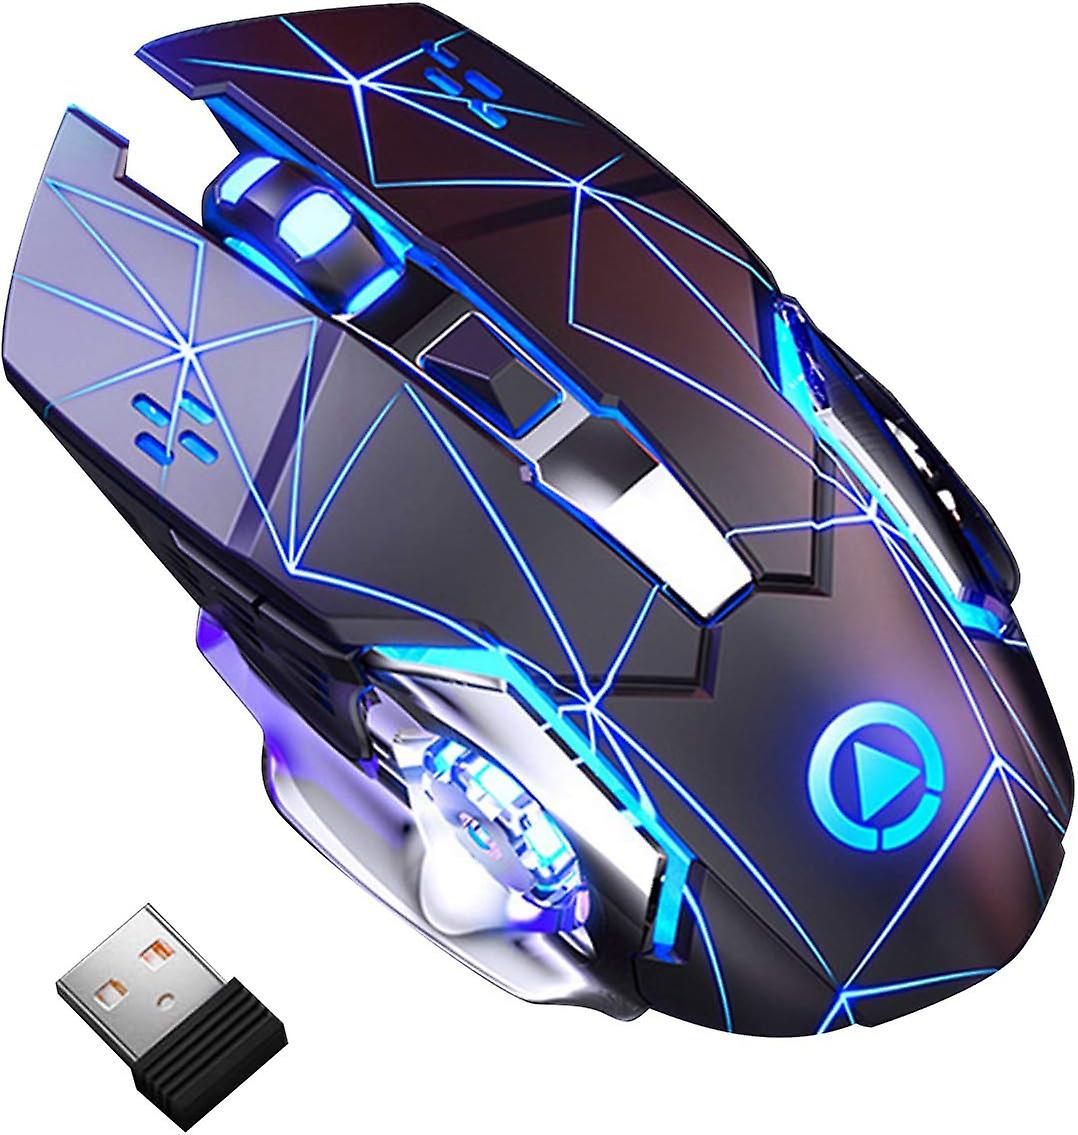 Mouse Nou pentru Gaming, E-Sports A4, 1600dpi, 6 Butoane, RGB, Star Black, Wireless